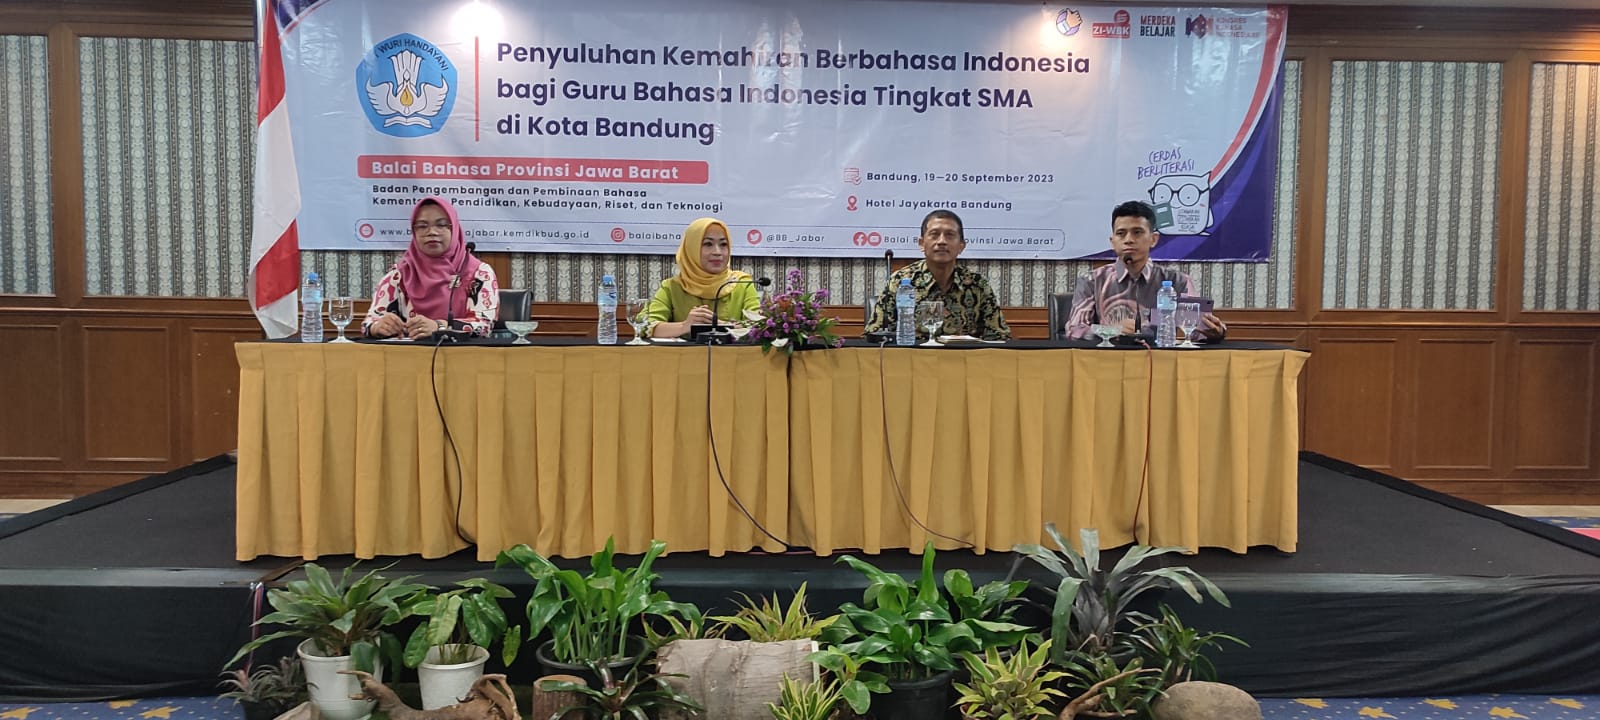 Penyuluhan Kemahiran Berbahasa Indonesia bagi Guru Bahasa Indonesia Tingkat SMA di Kota Bandung